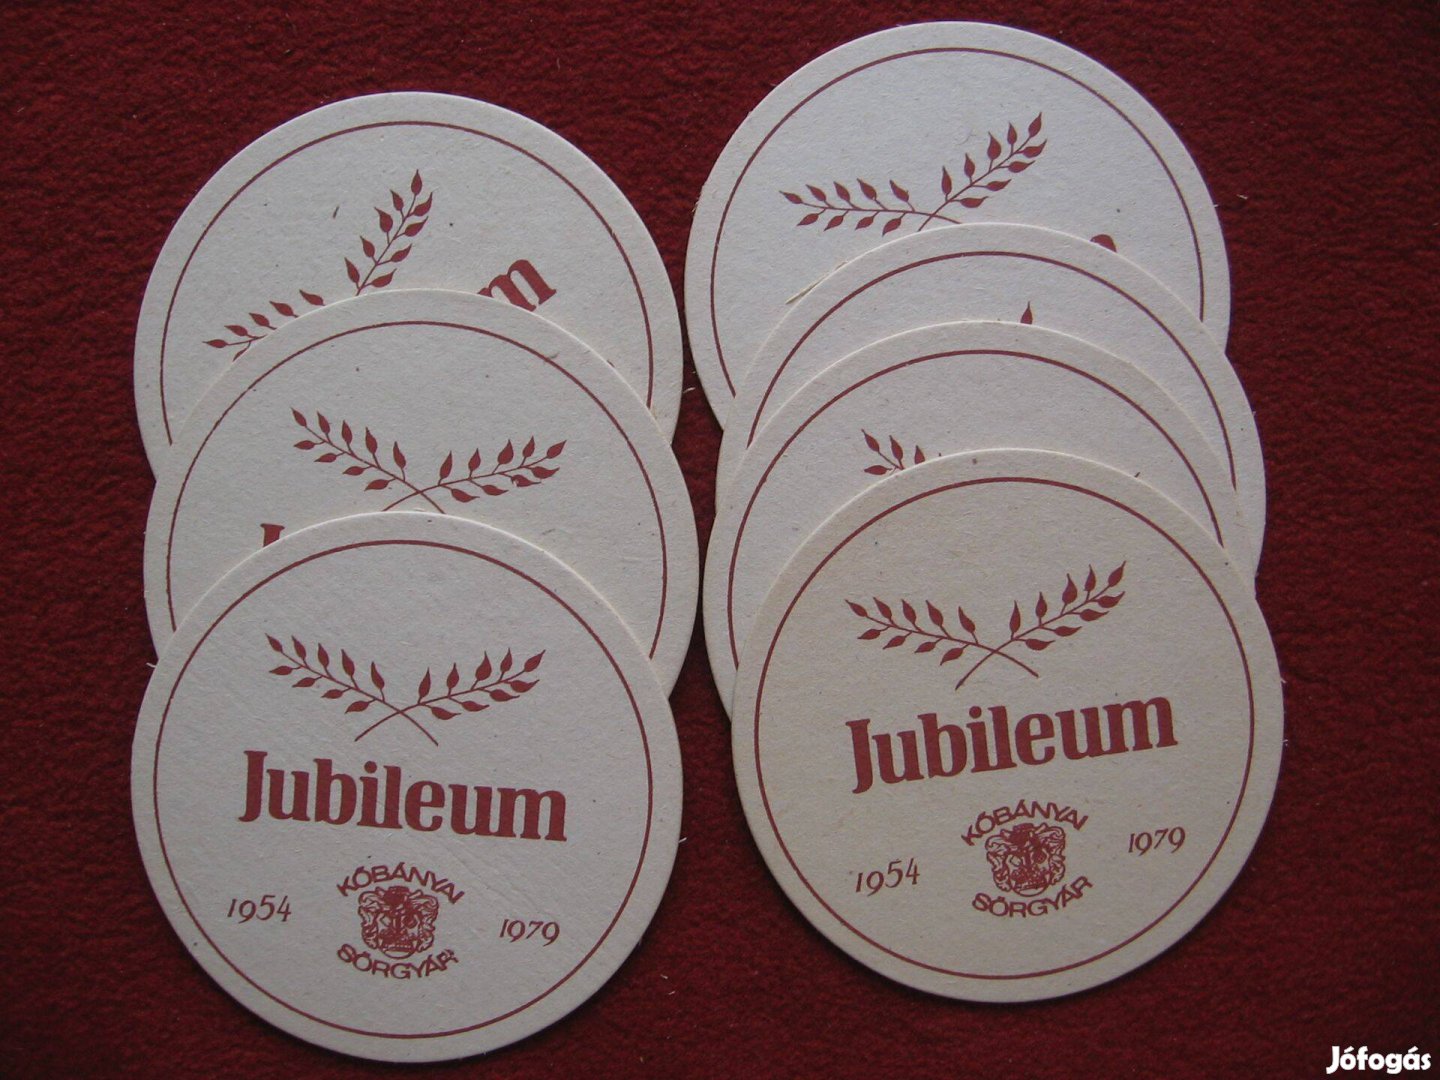 Jubileum Kőbányai karton poháralátétek 7 db